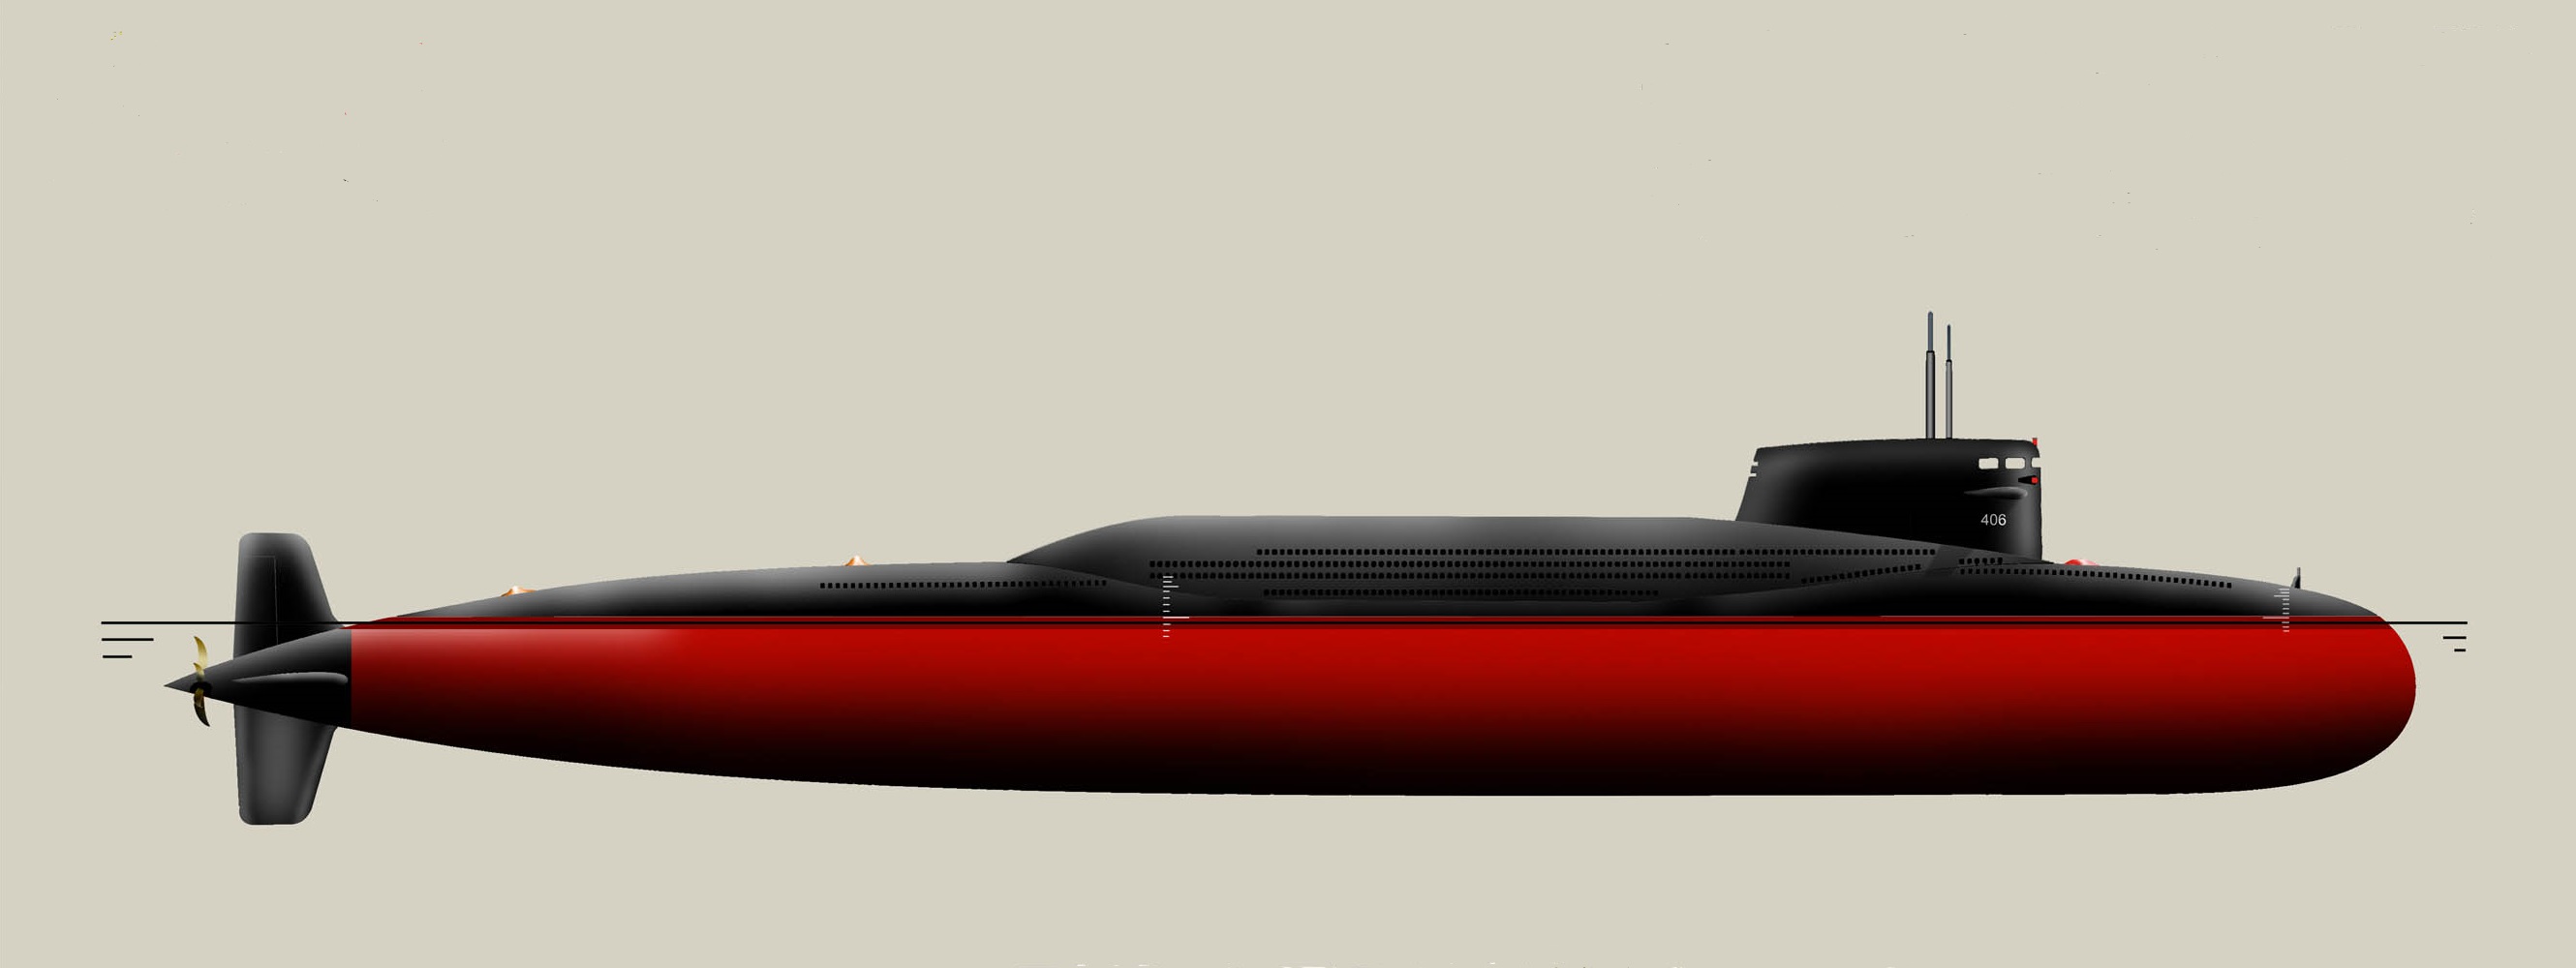 092型戰略核潛艇改裝後側視圖